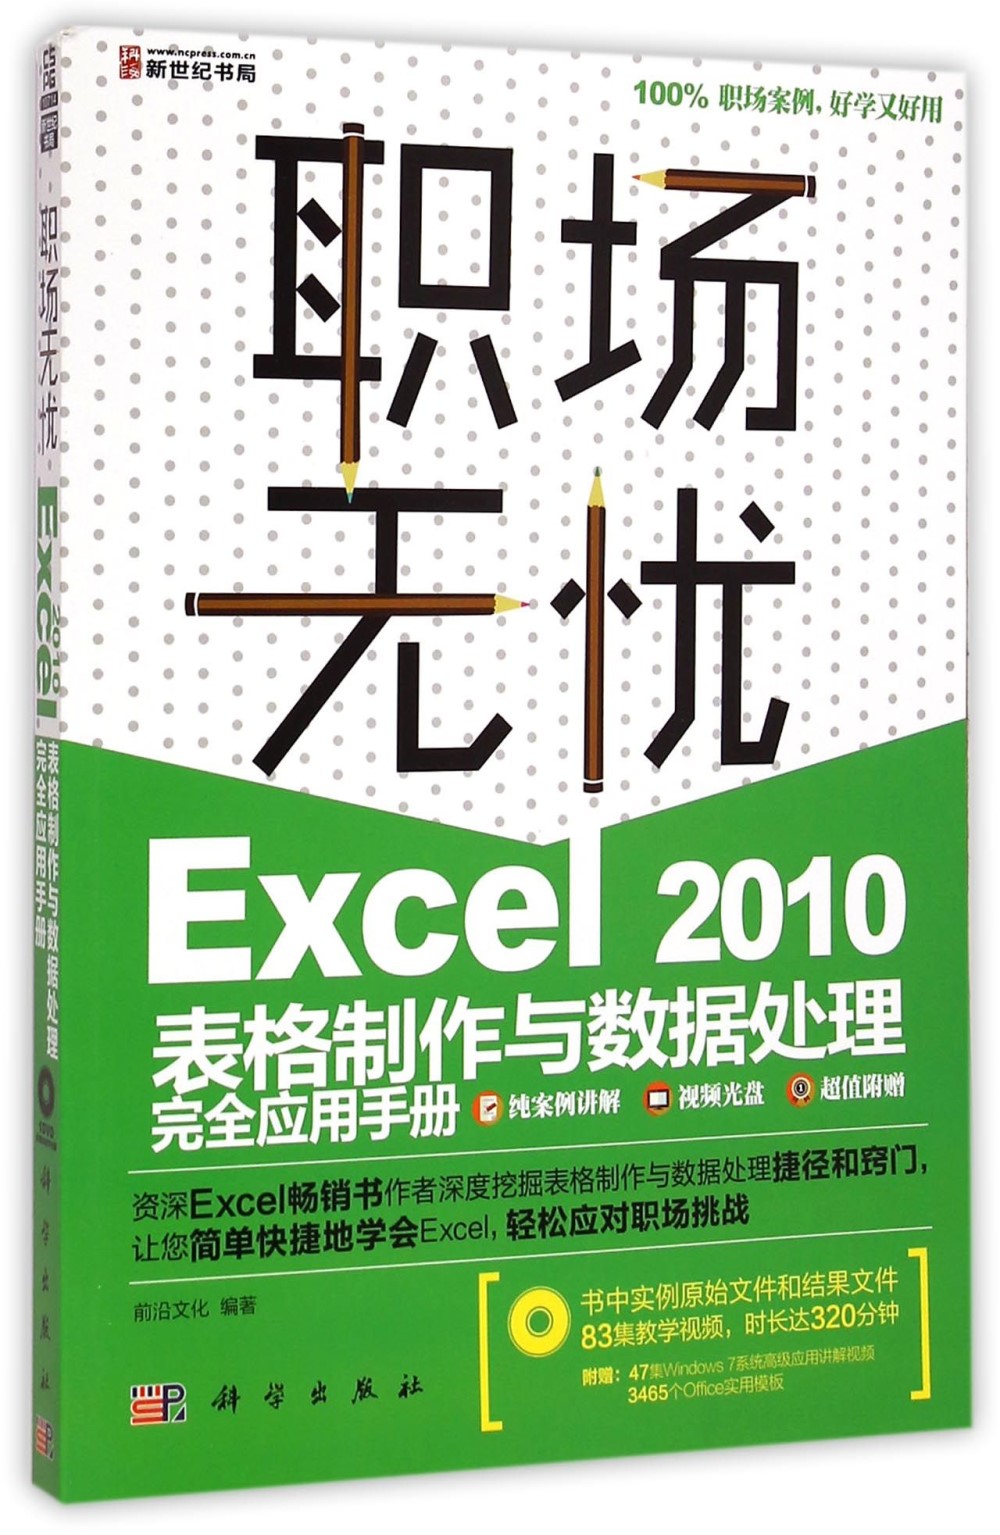 職場無憂-Excel 2010表格制作與數據處理完全應用手冊(1DVD)